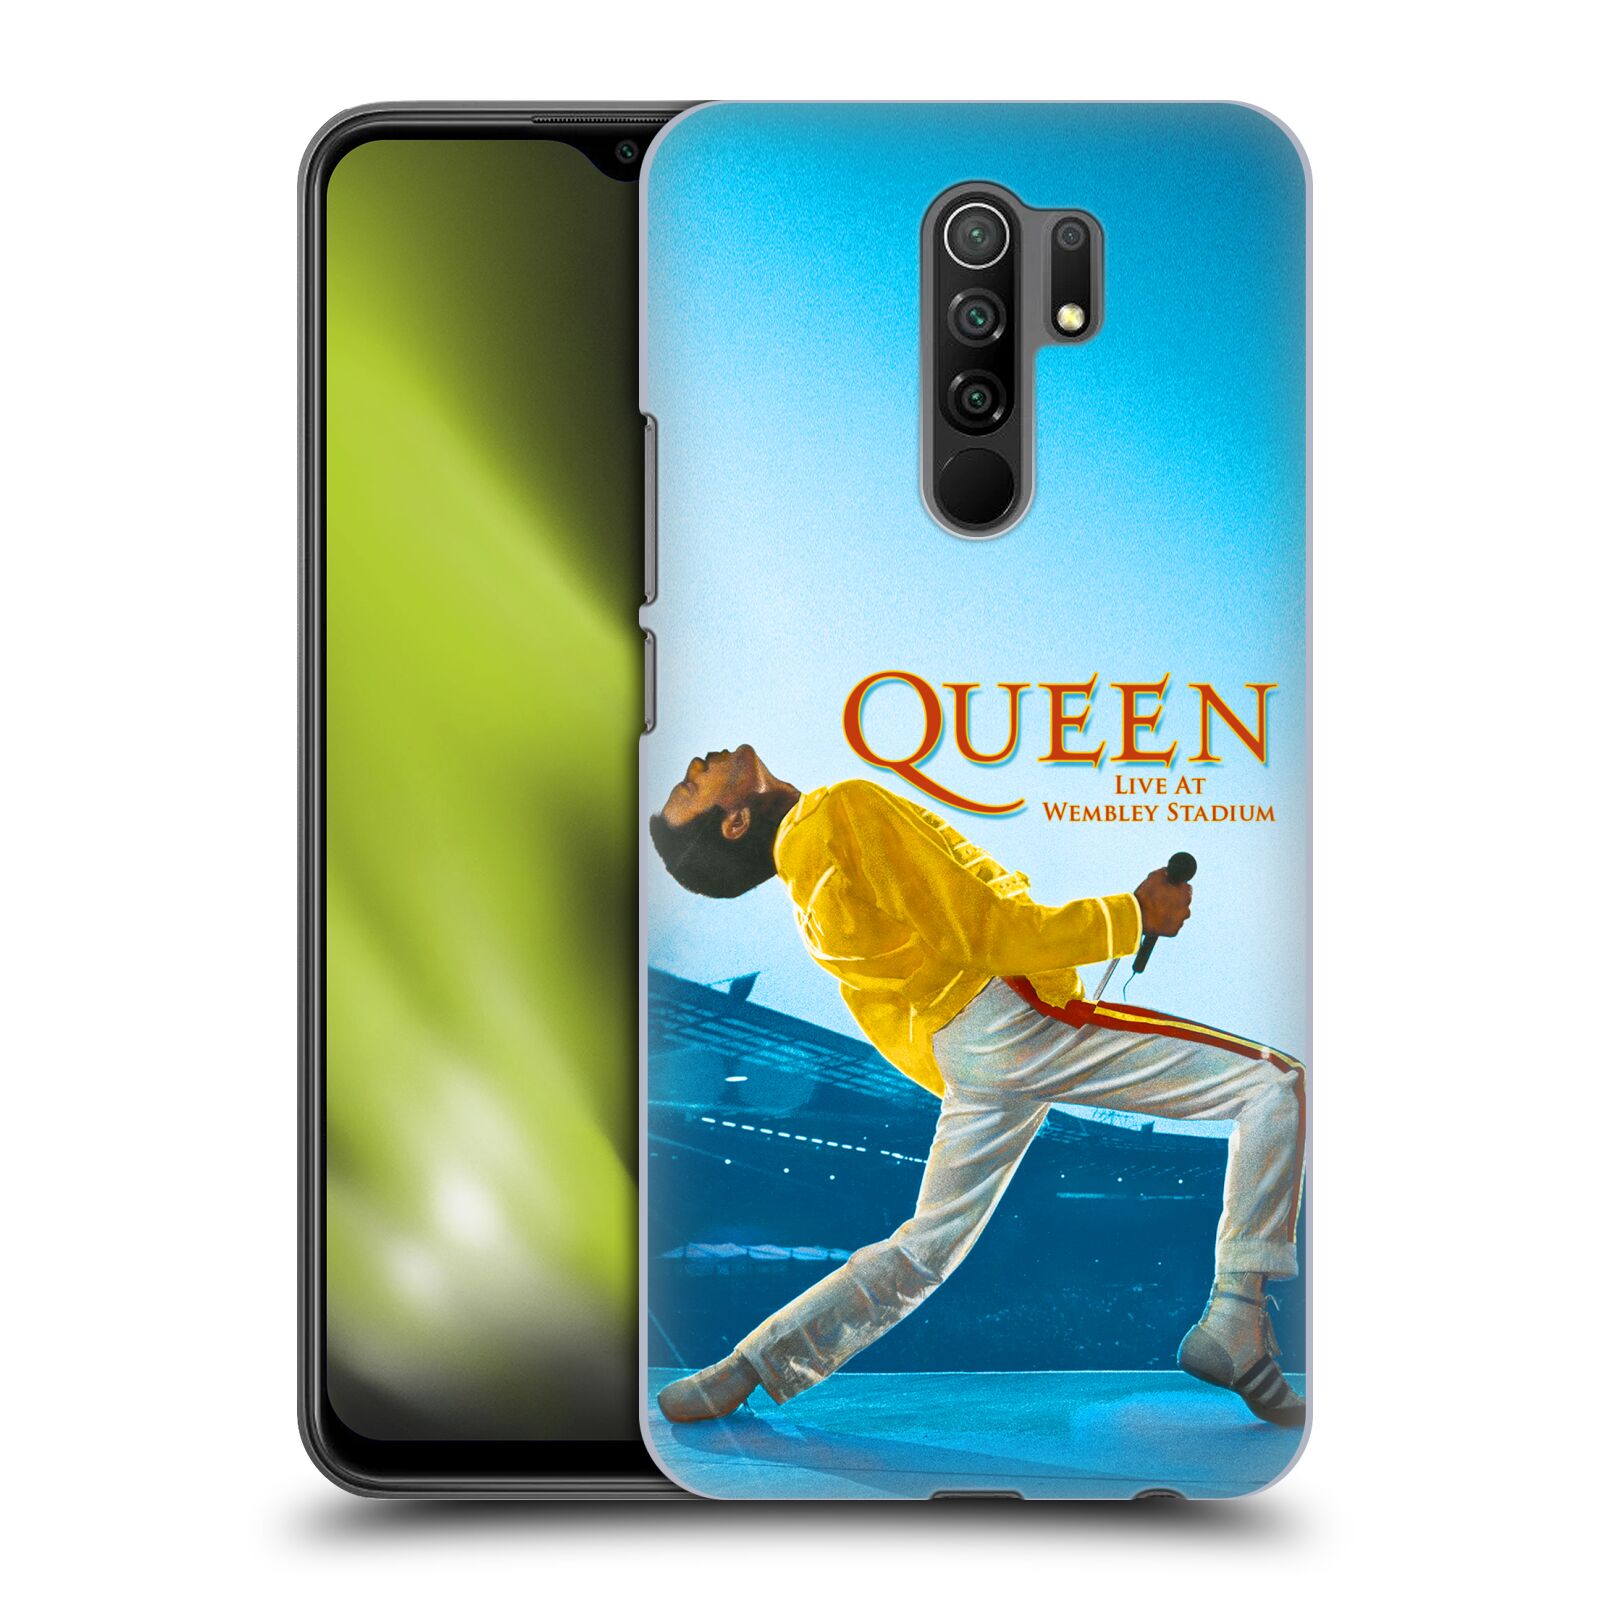 Plastový obal HEAD CASE na mobil Xiaomi Redmi 9 vzor skupina Queen